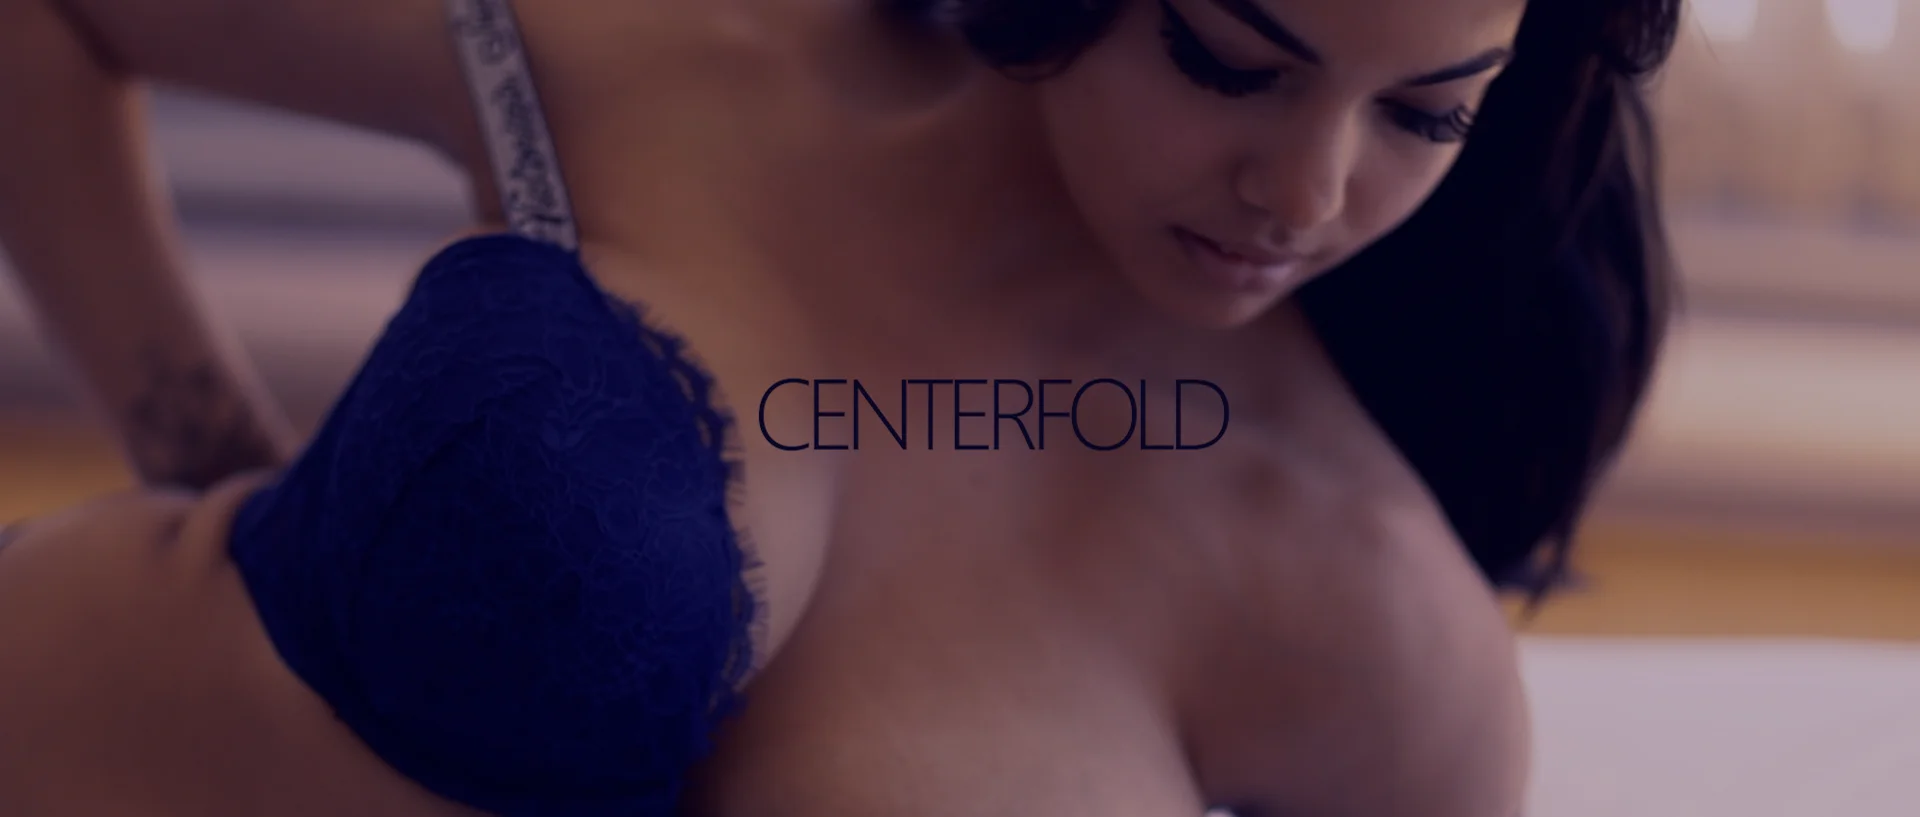 Centerfold on Vimeo